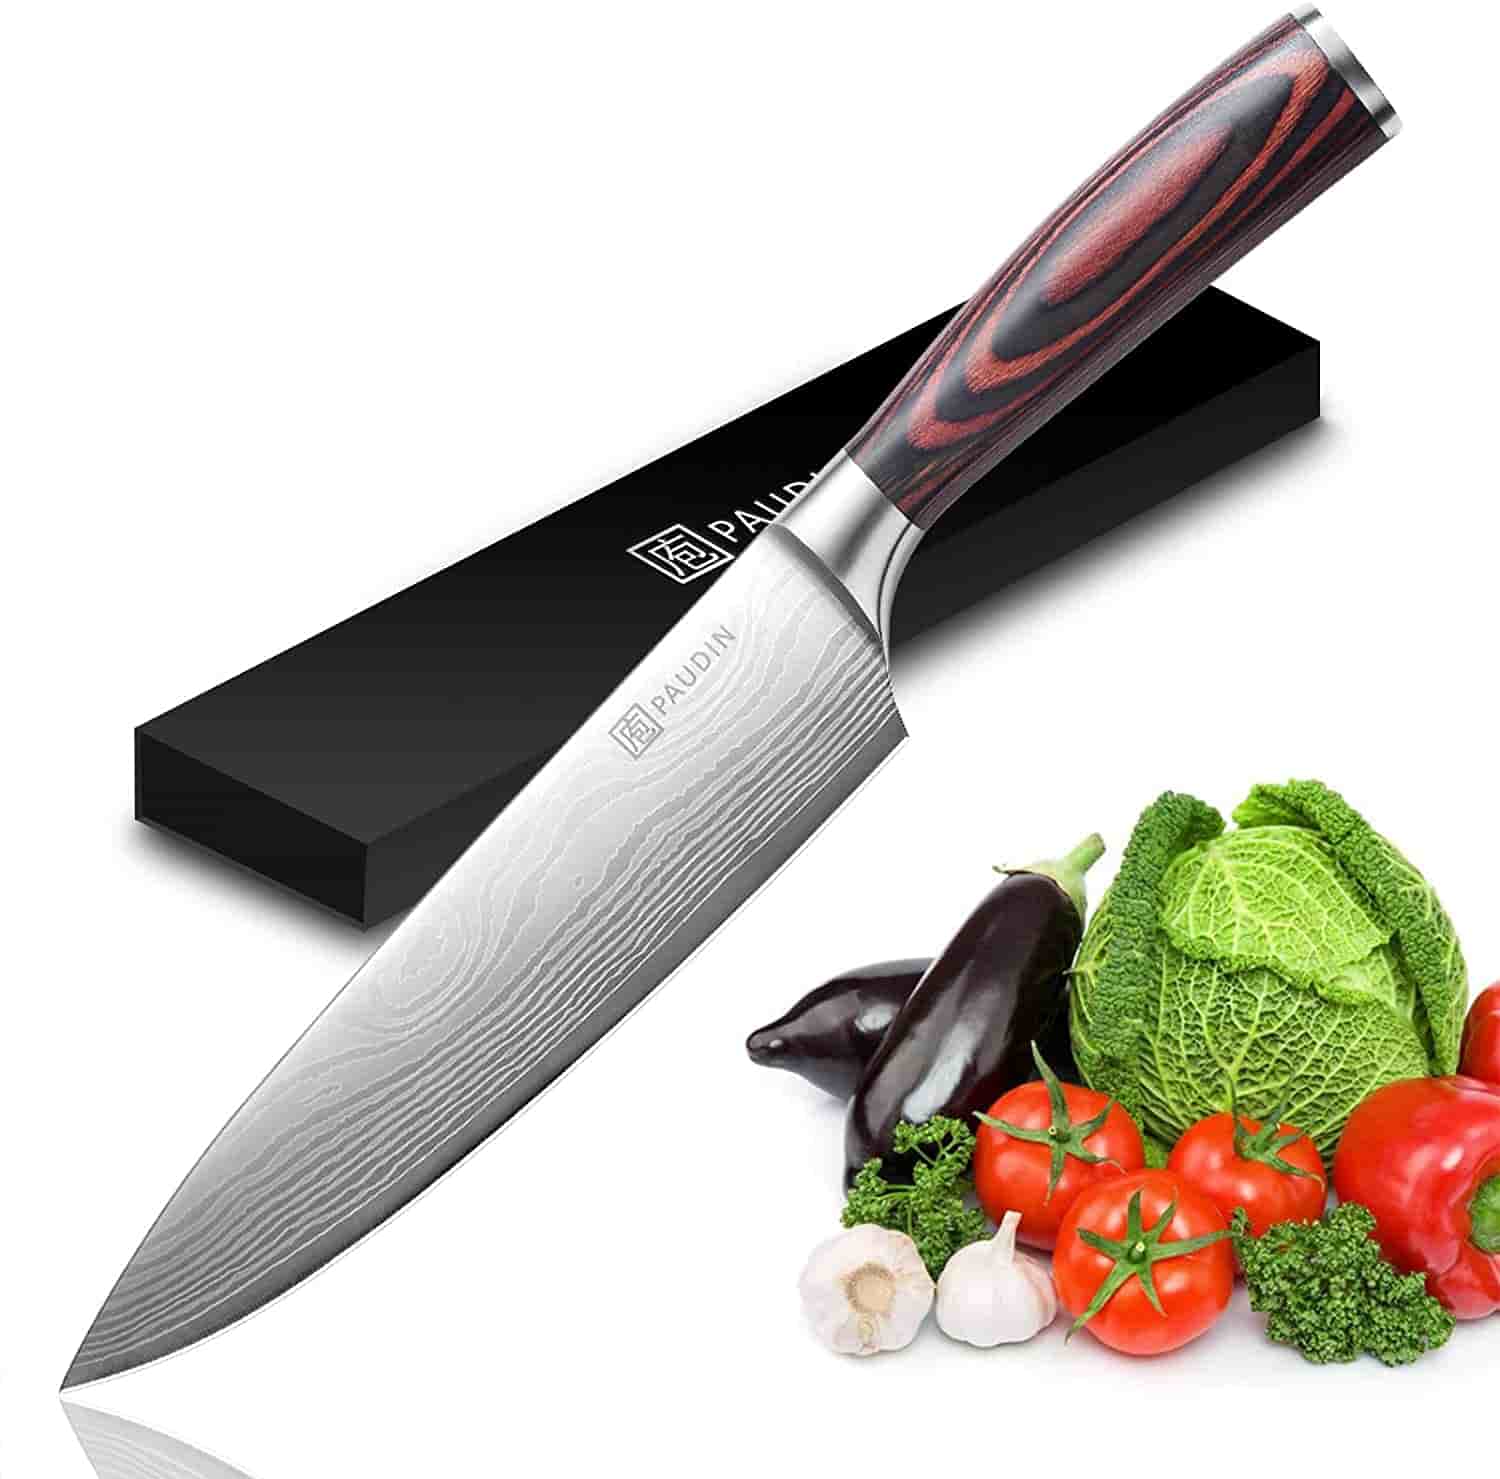 Chef’s Knife - PAUDIN Pro Kitchen Knife